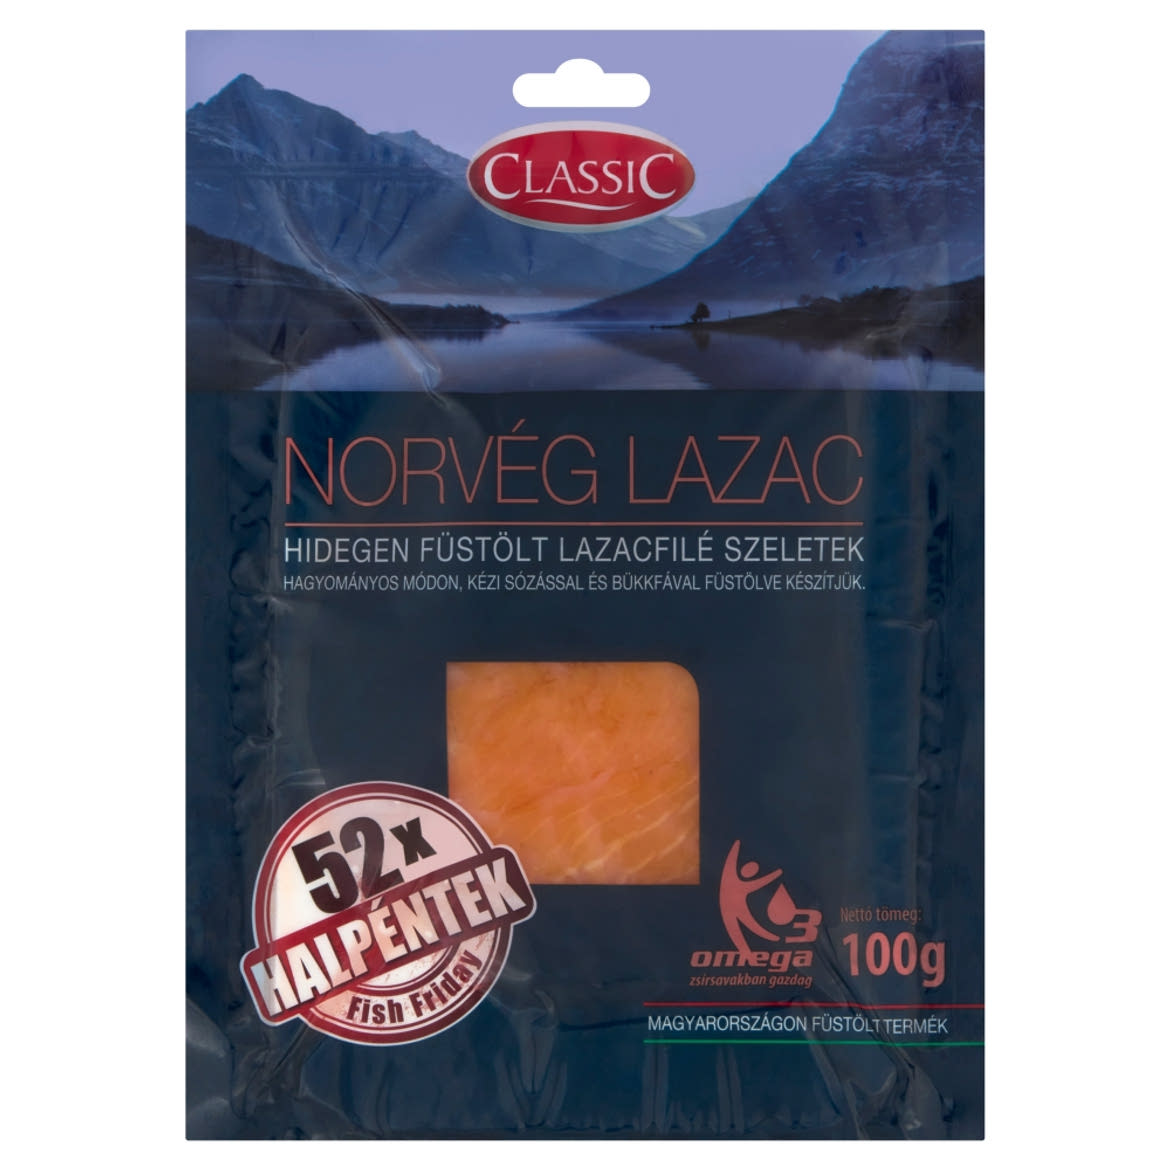 Classic hidegen füstölt norvég lazacfilé szeletek